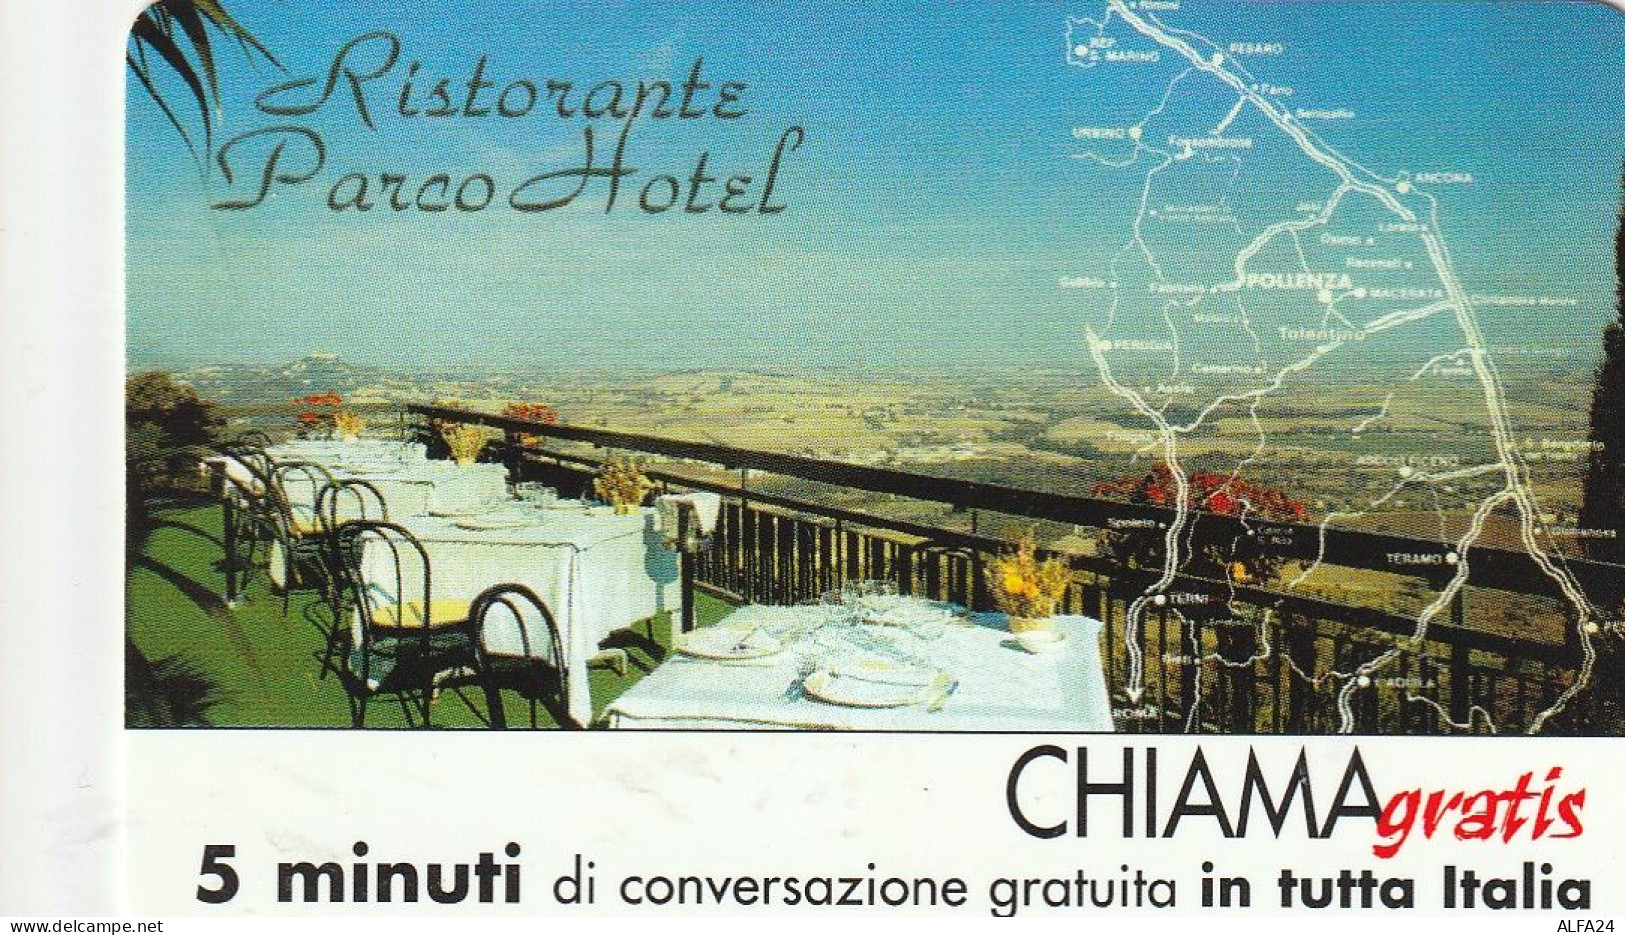 CHIAMAGRATIS MASTER/PROTOTIPO 574 RIST PARCO HOTEL  (CV1759 - Privées - Hommages